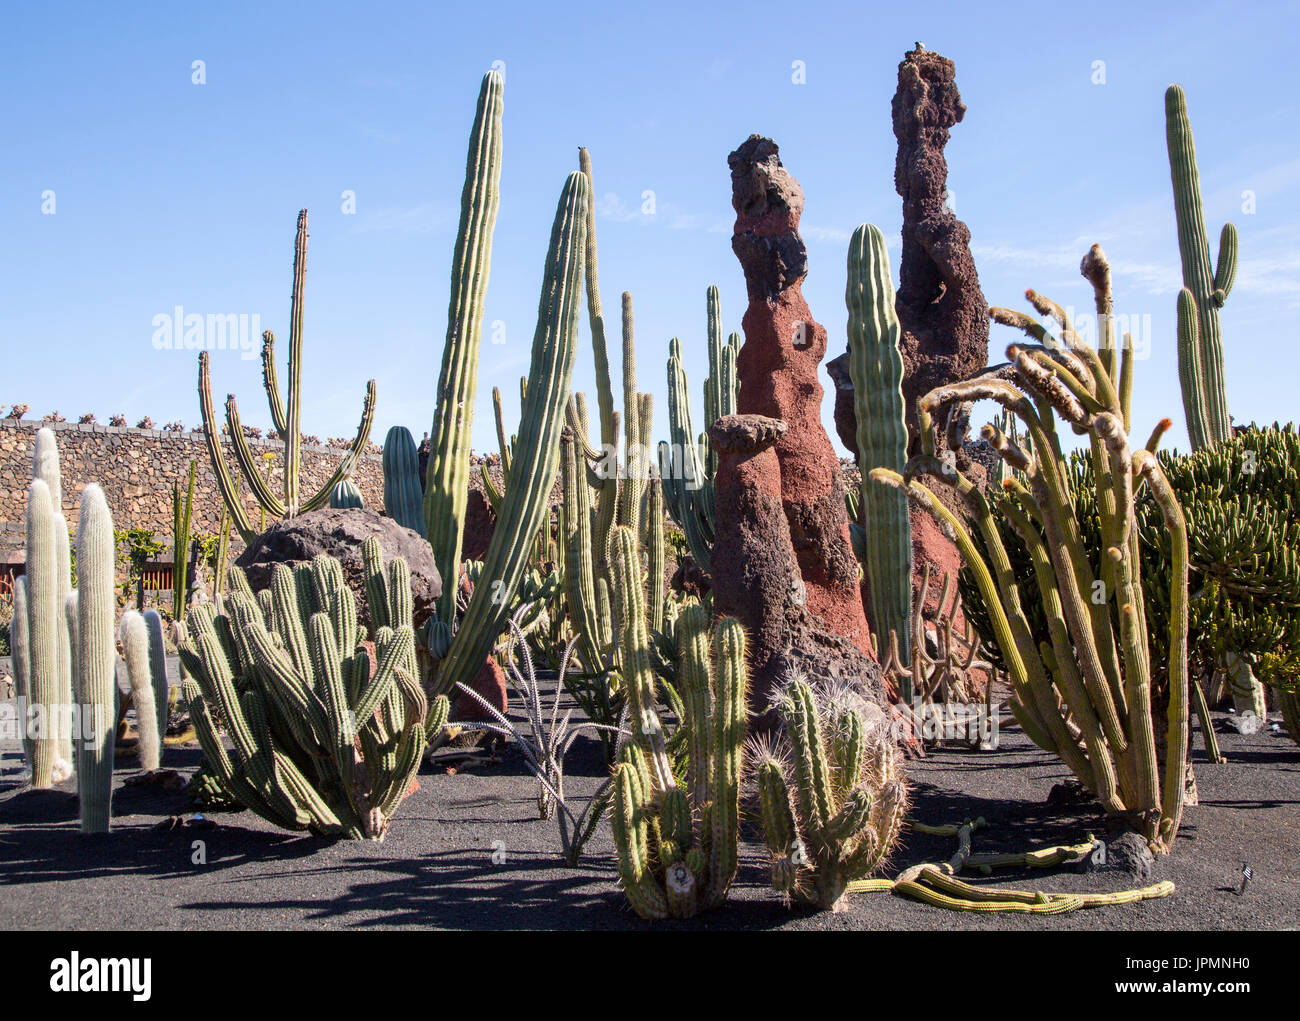 Dentro de las plantas de cactus jardín de cactus diseñado por César Manrique, Guatiza, Lanzarote, Islas Canarias, España Foto de stock